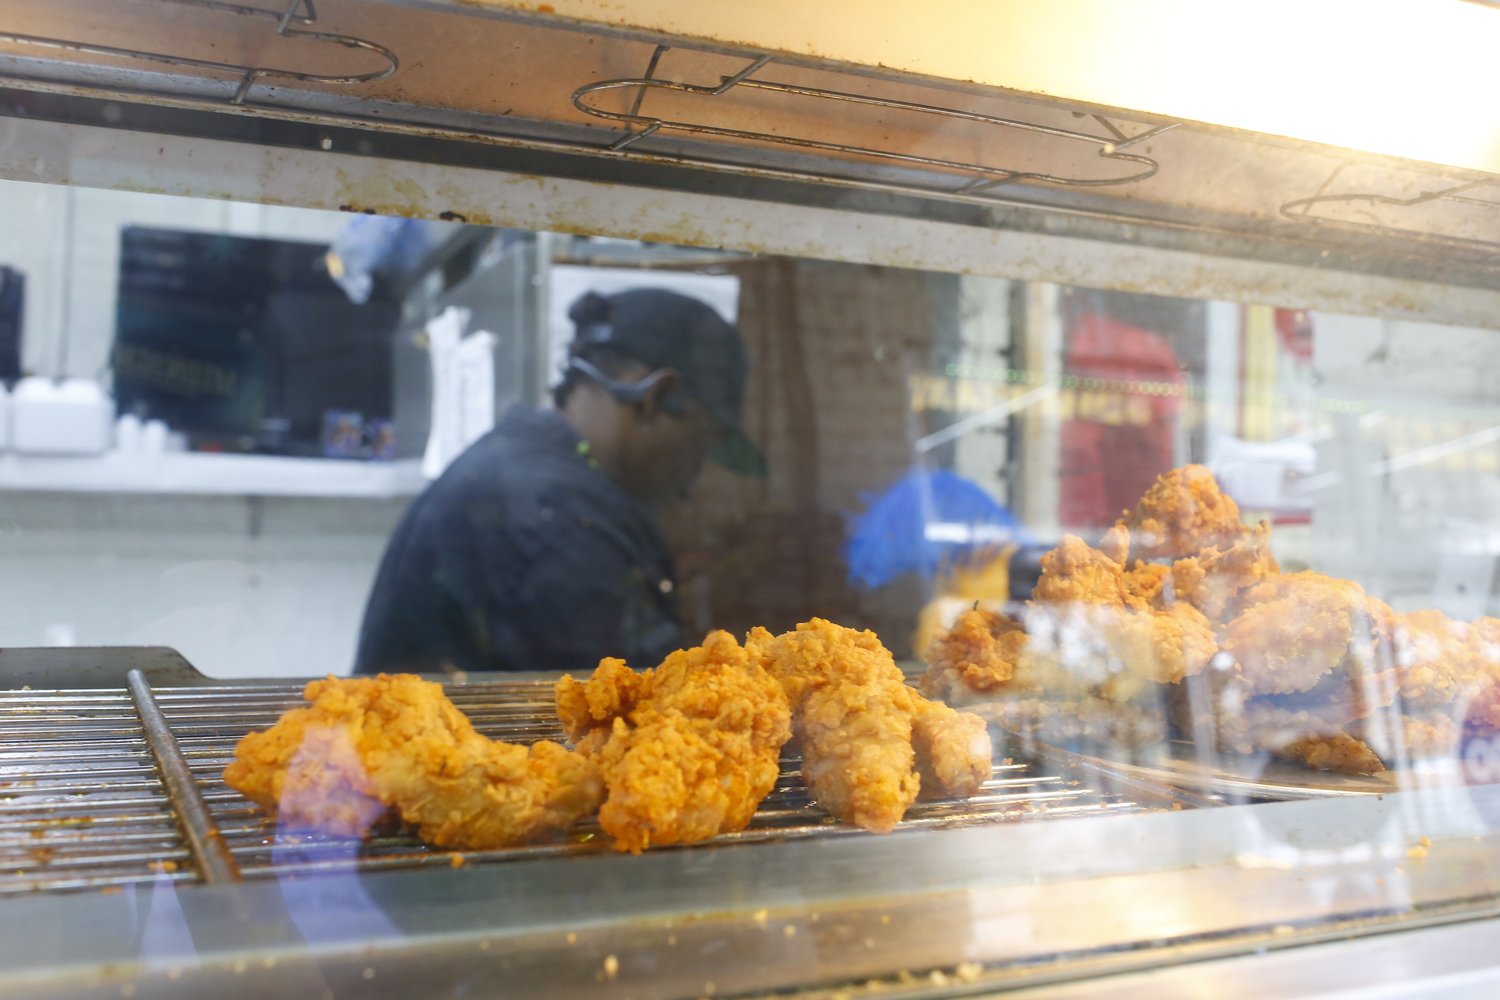 Kenny y prépare des plats louisianais, comme le poulet frit © Globe Reporters 